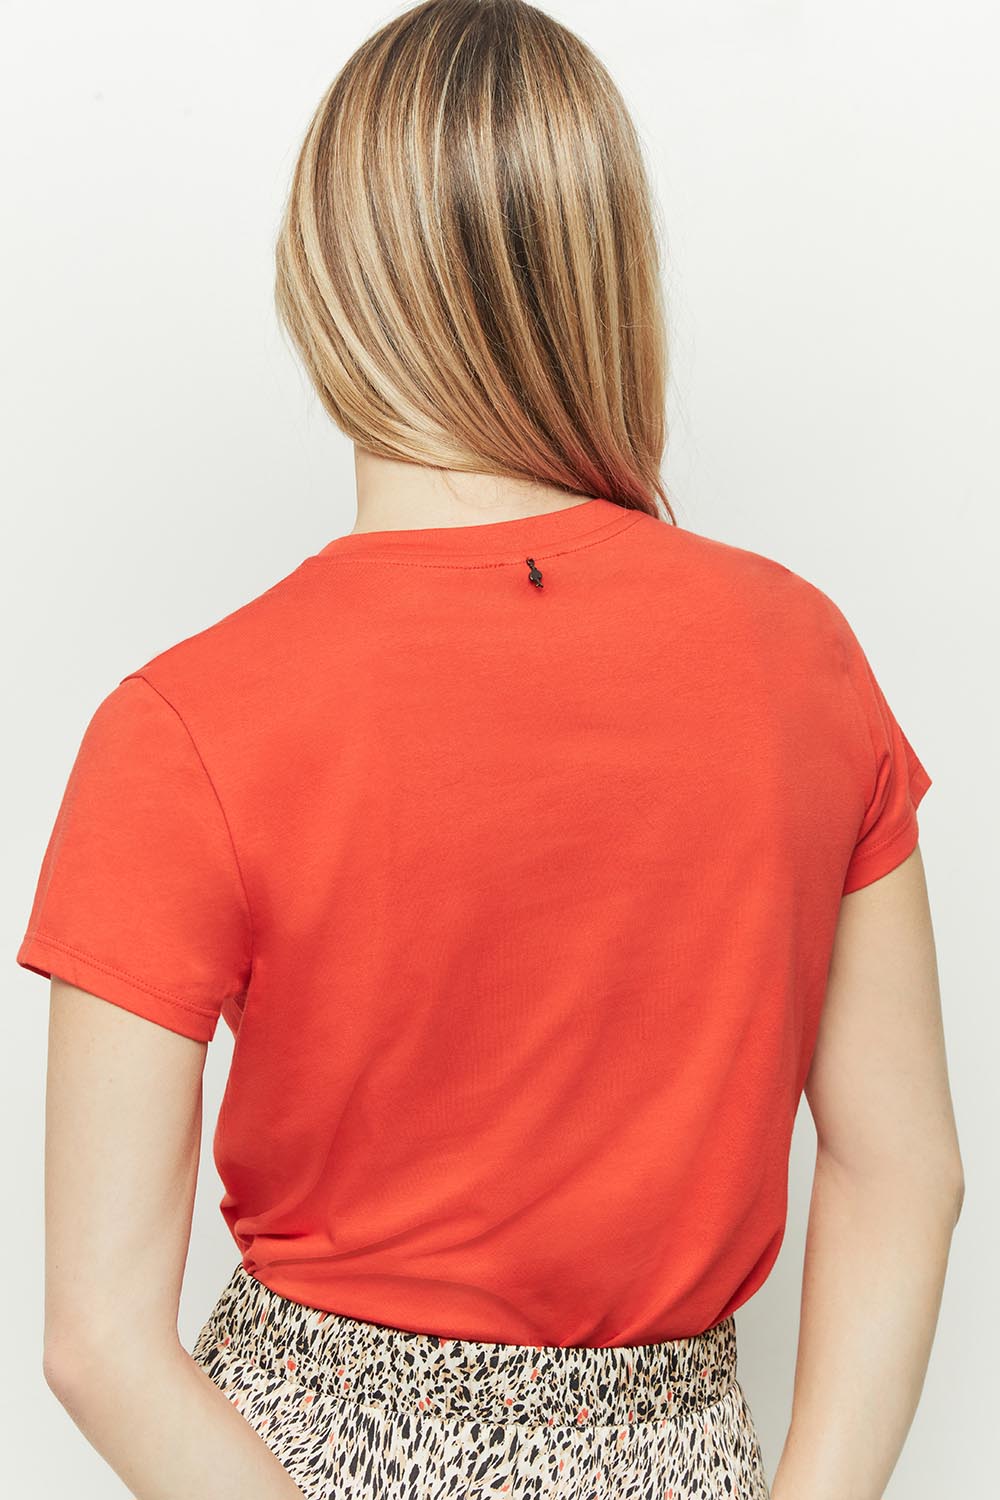 MASTER - T-shirt orange coton bio sérigraphie danseuses et léopard